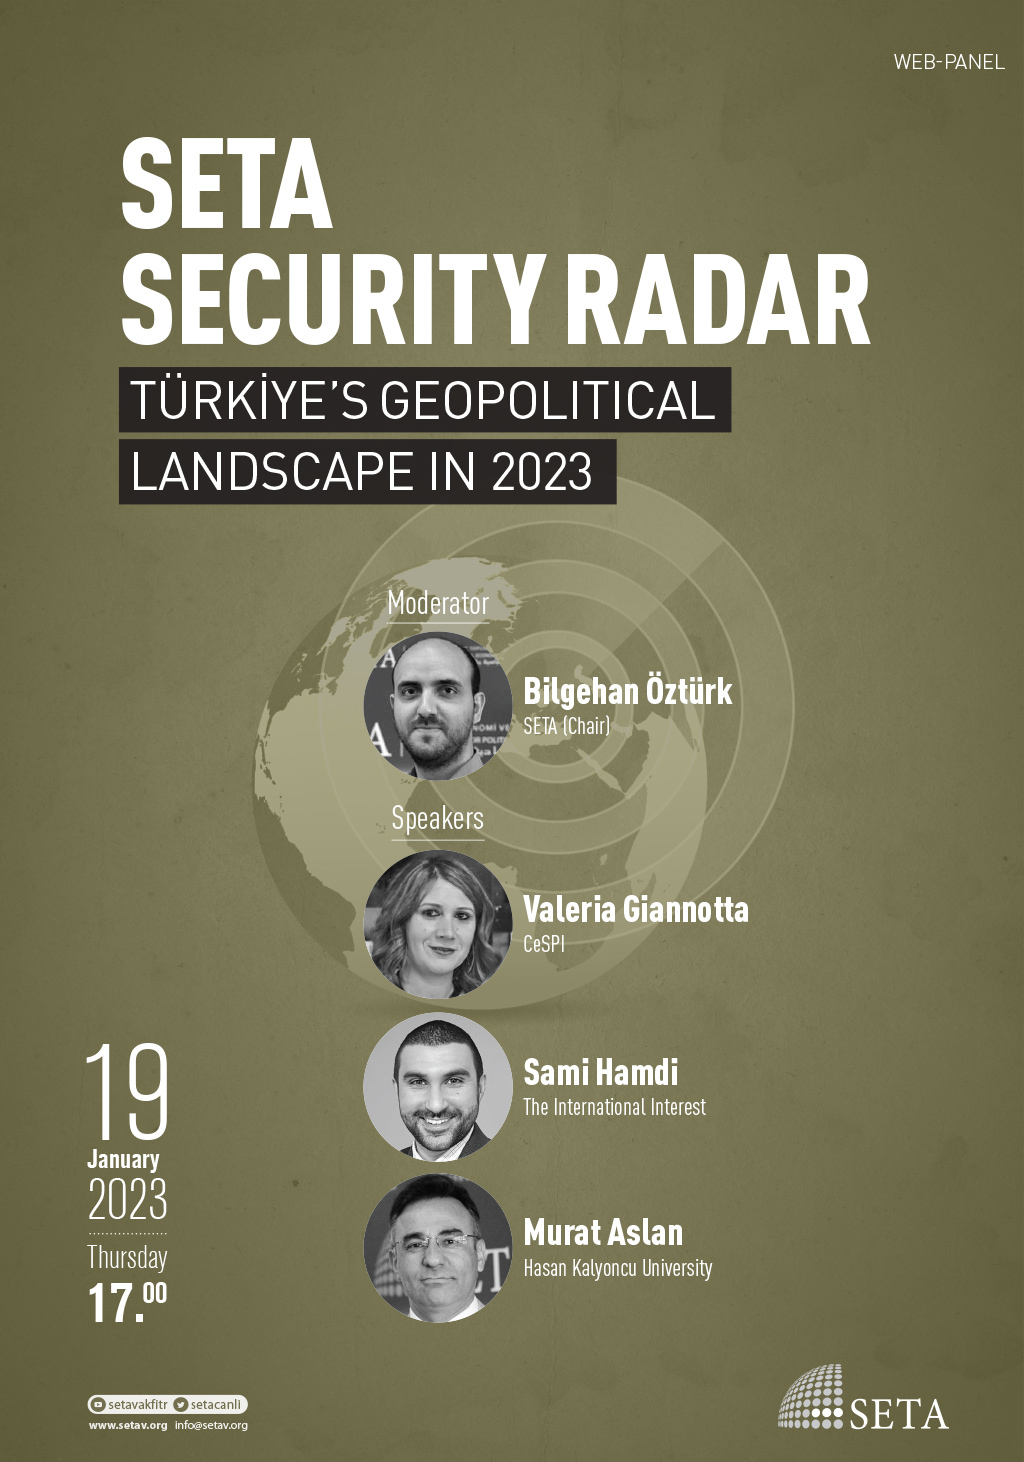 Web Panel: SETA Security Radar | Türkiye’s Geopolitical Landscape in 2023